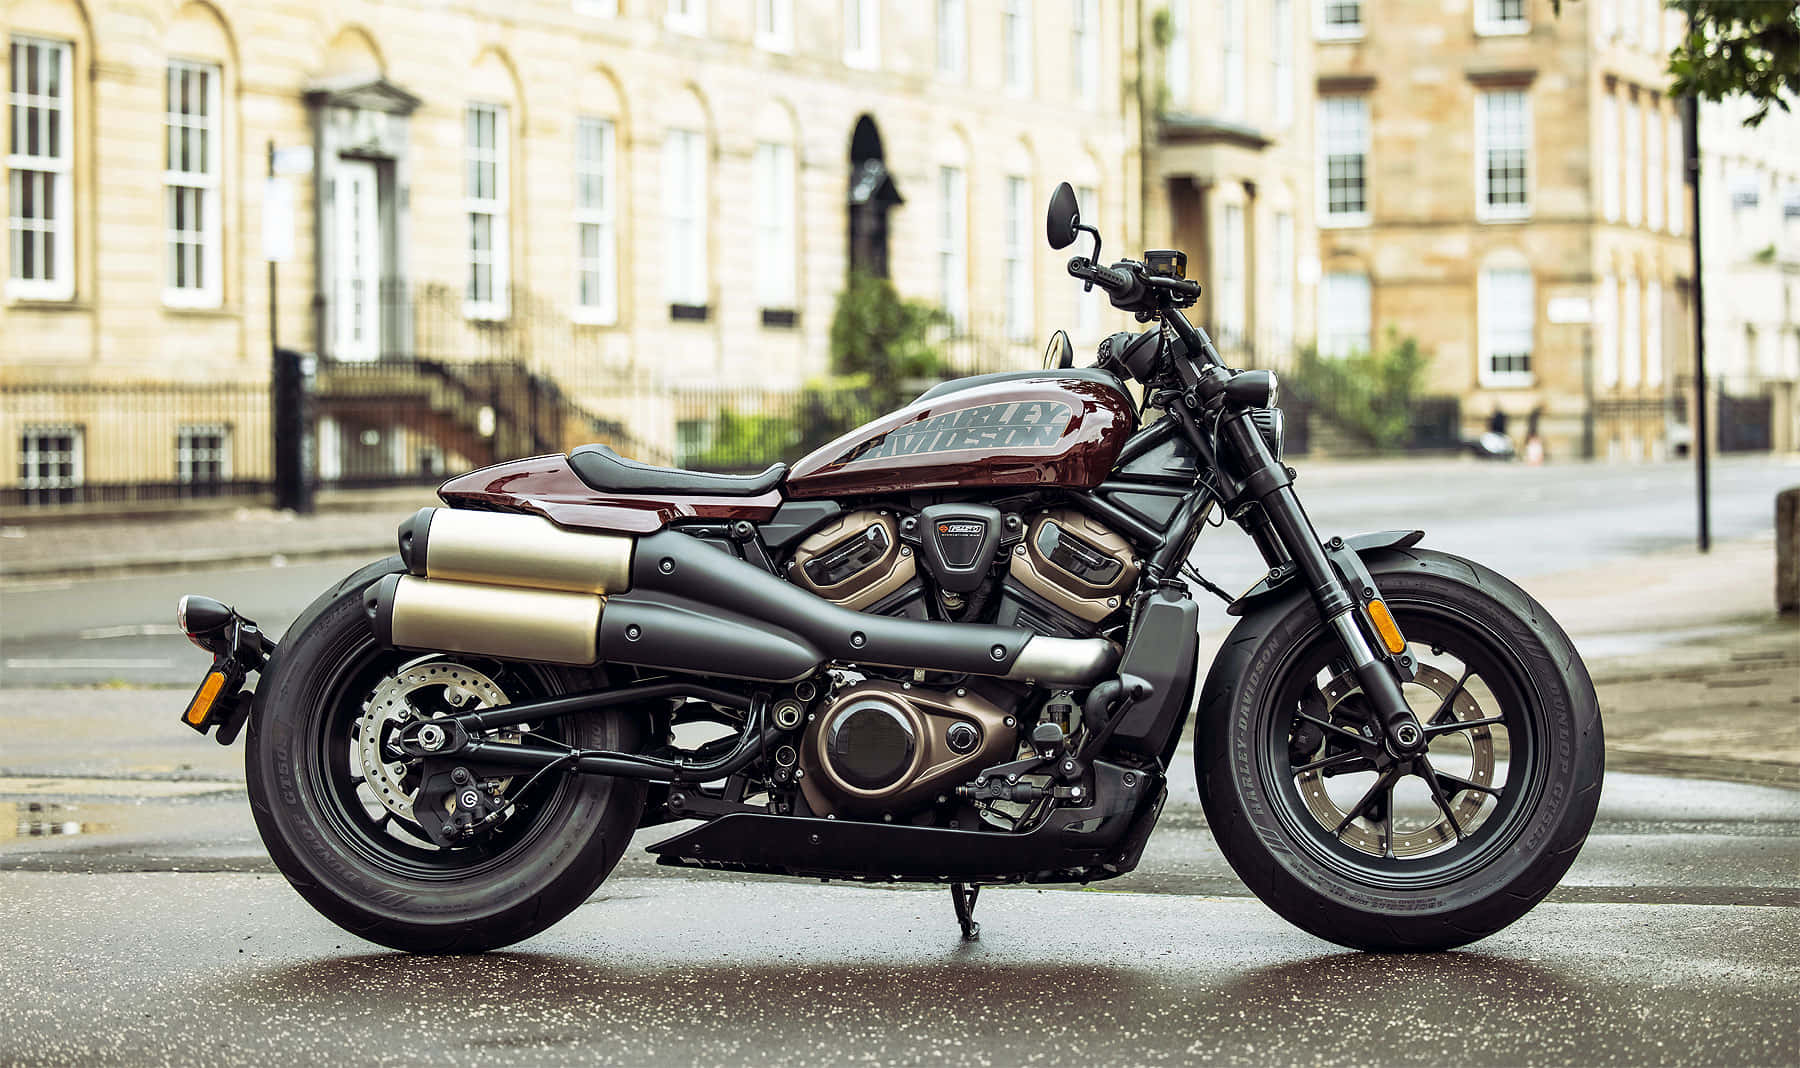 Eineamerikanische Ikone: Harley Davidson